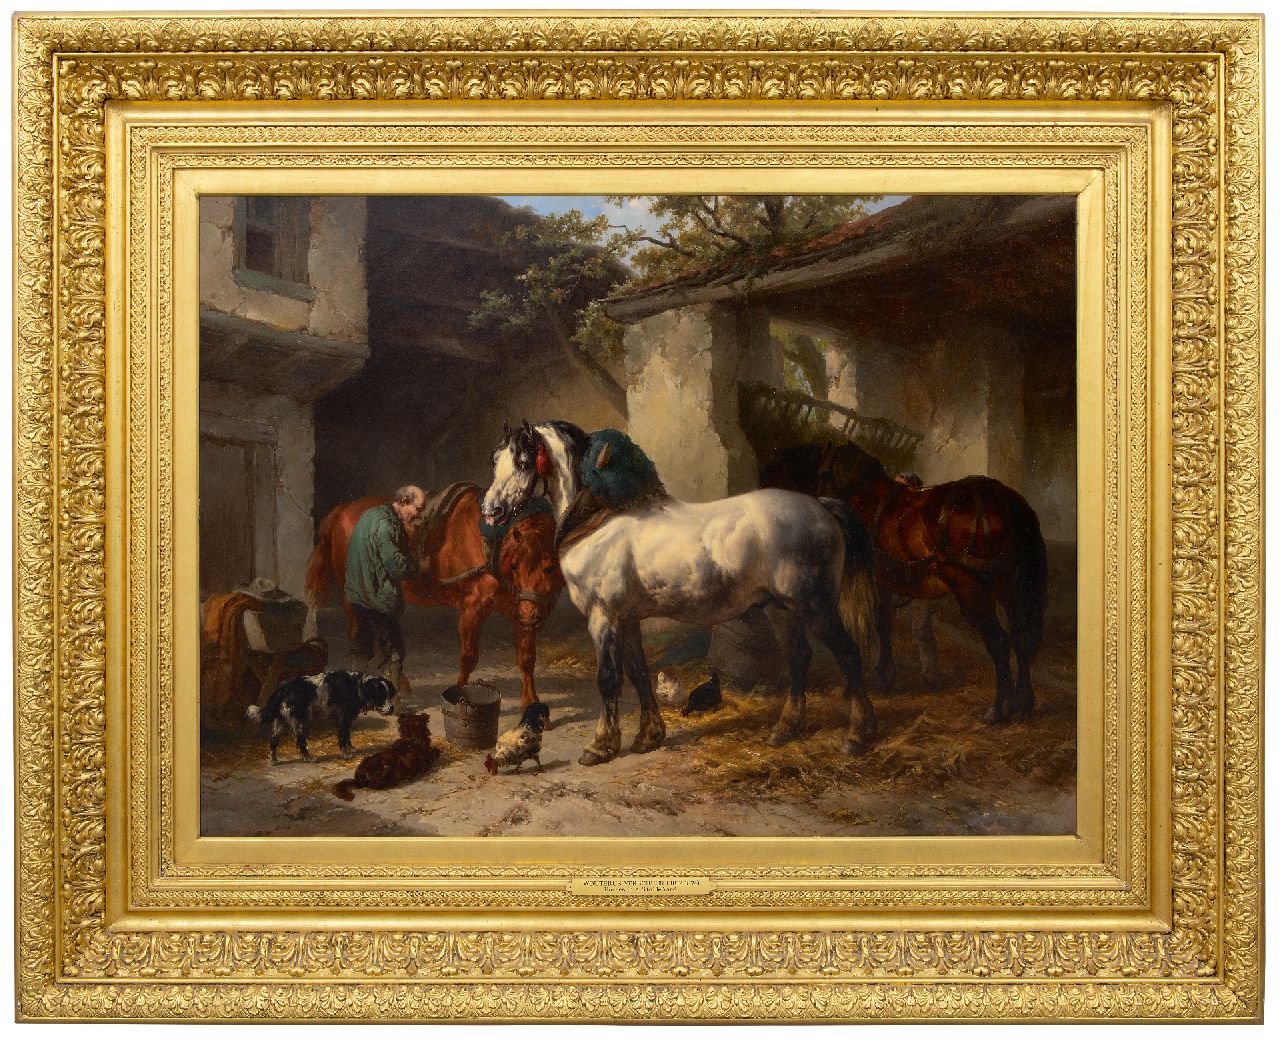 Verschuur W.  | Wouterus Verschuur | Schilderijen te koop aangeboden | Paarden bij de stal, olieverf op doek 76,3 x 106,2 cm, gesigneerd linksonder